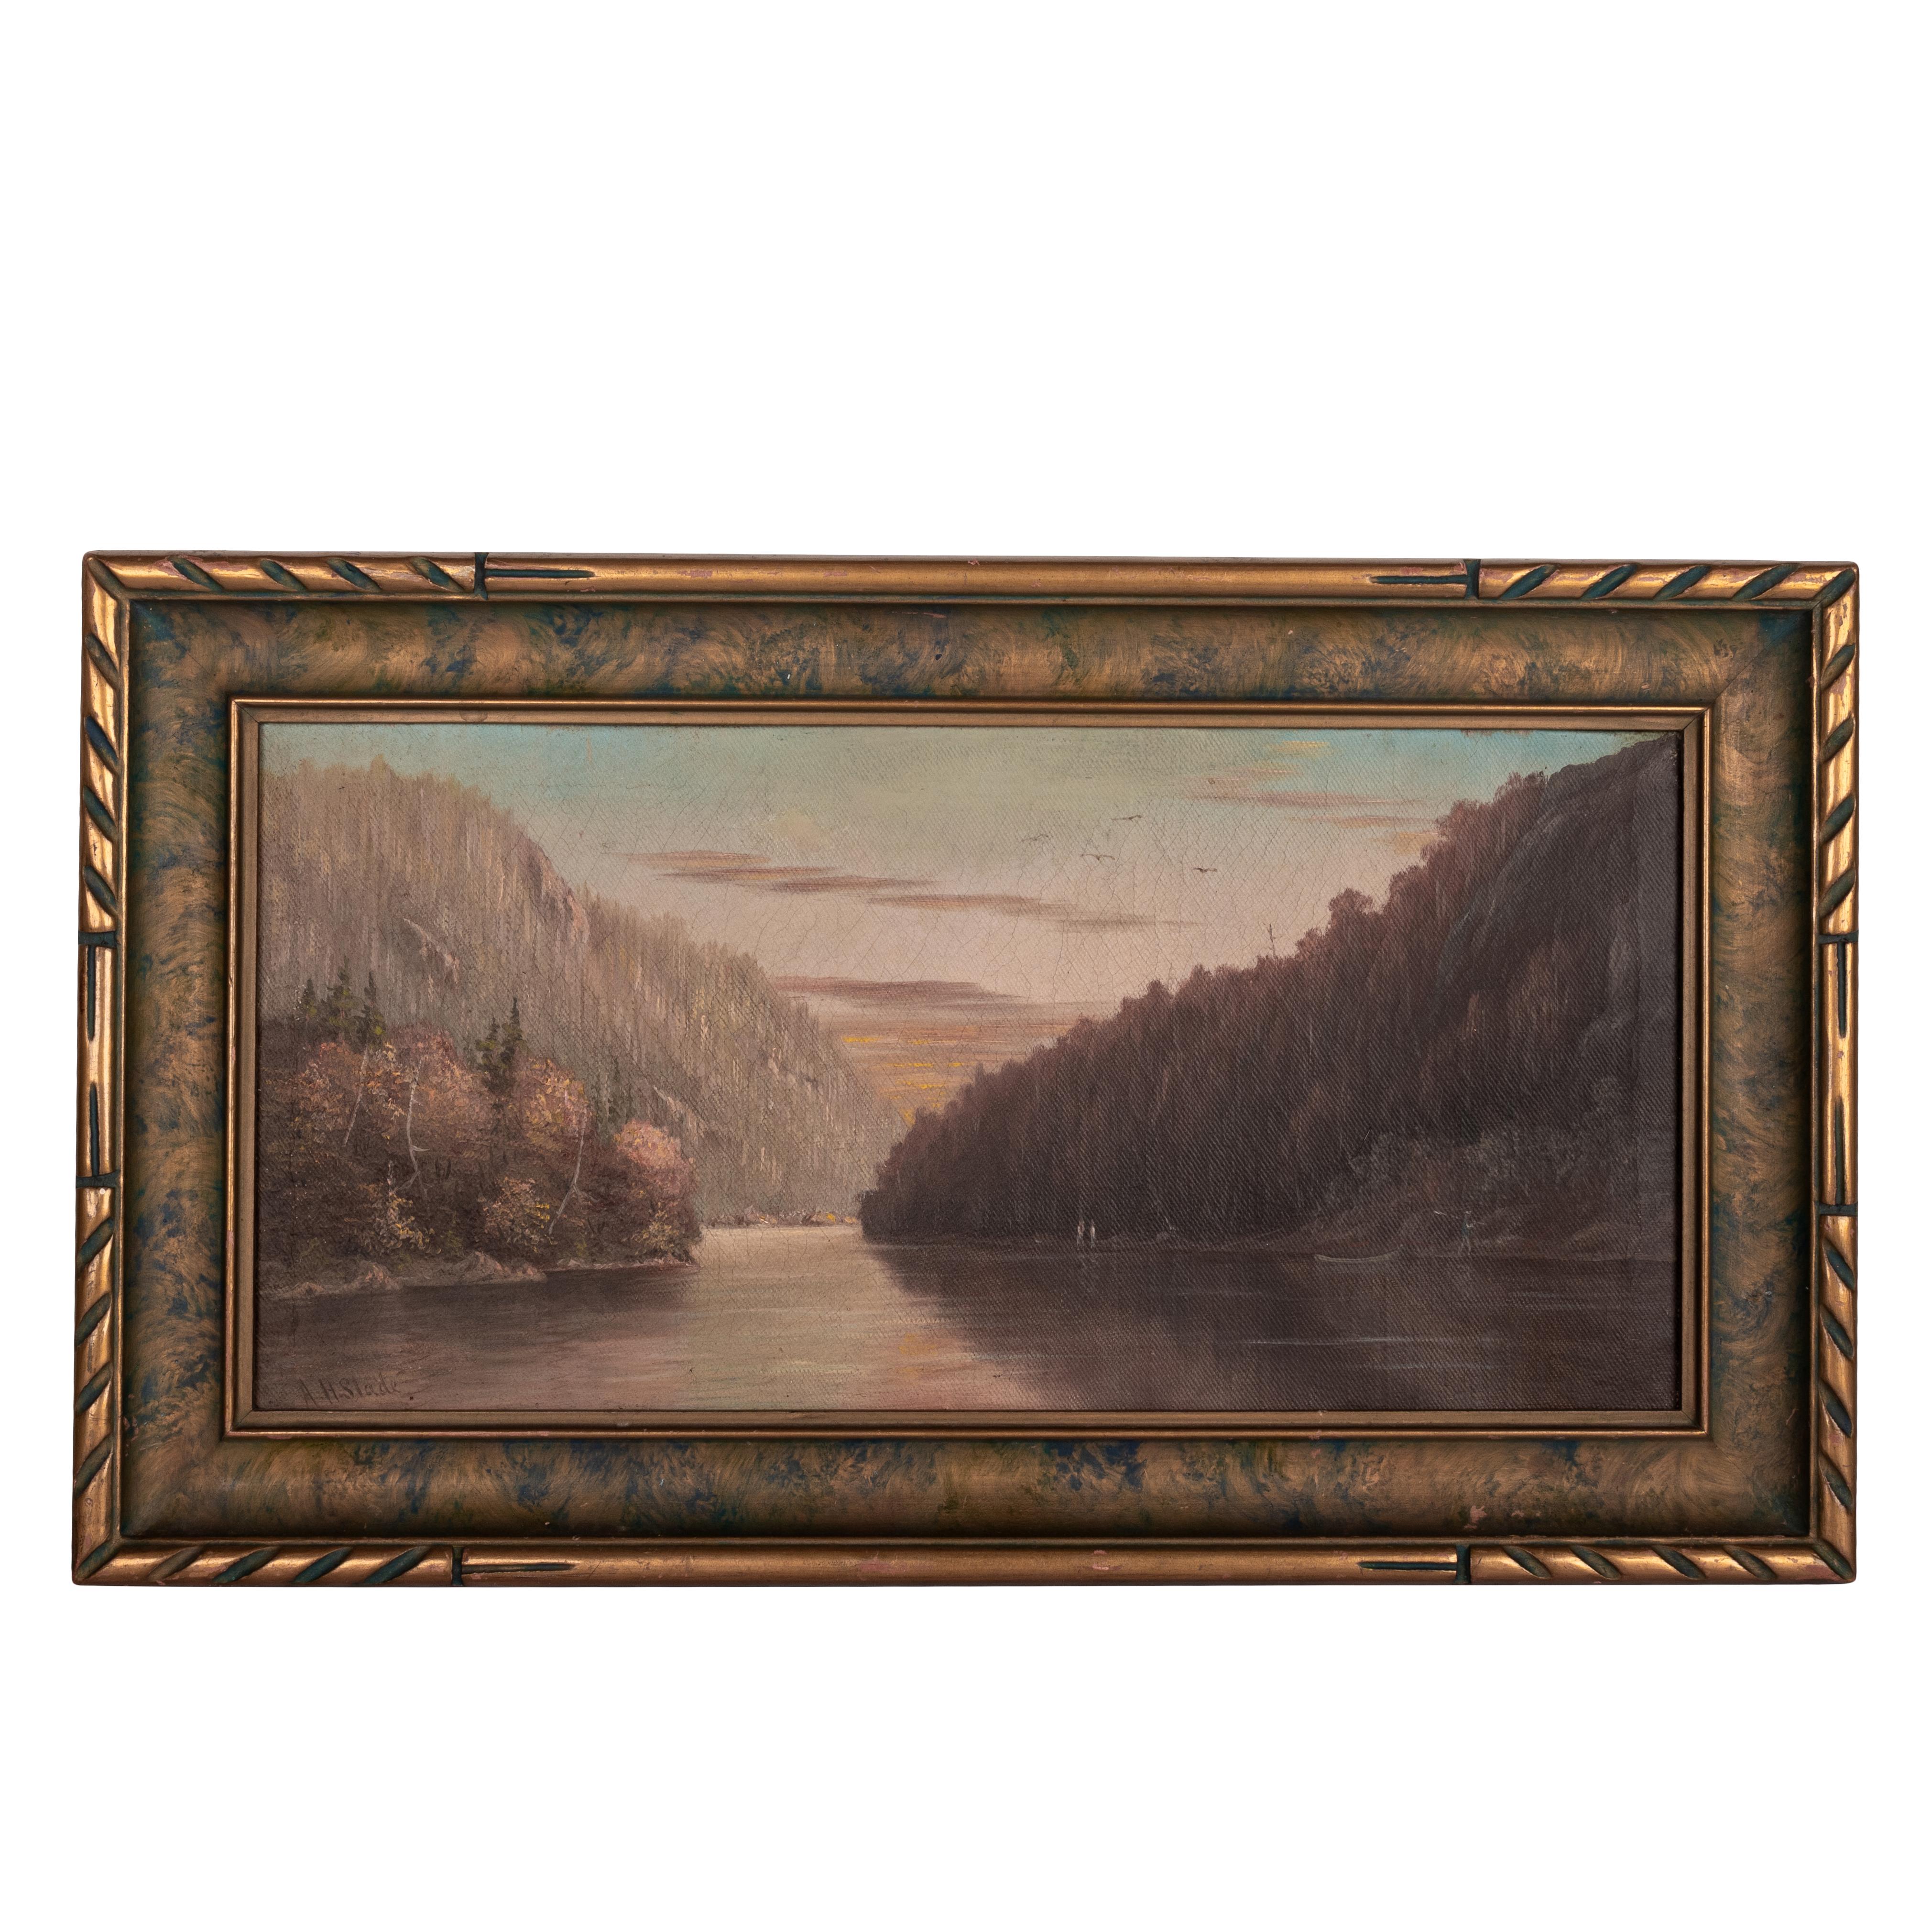 Landscape Painting  Albert Horatio Slade - Ancienne huile sur toile américaine réaliste du 19ème siècle représentant un paysage fluvial californien, 1888